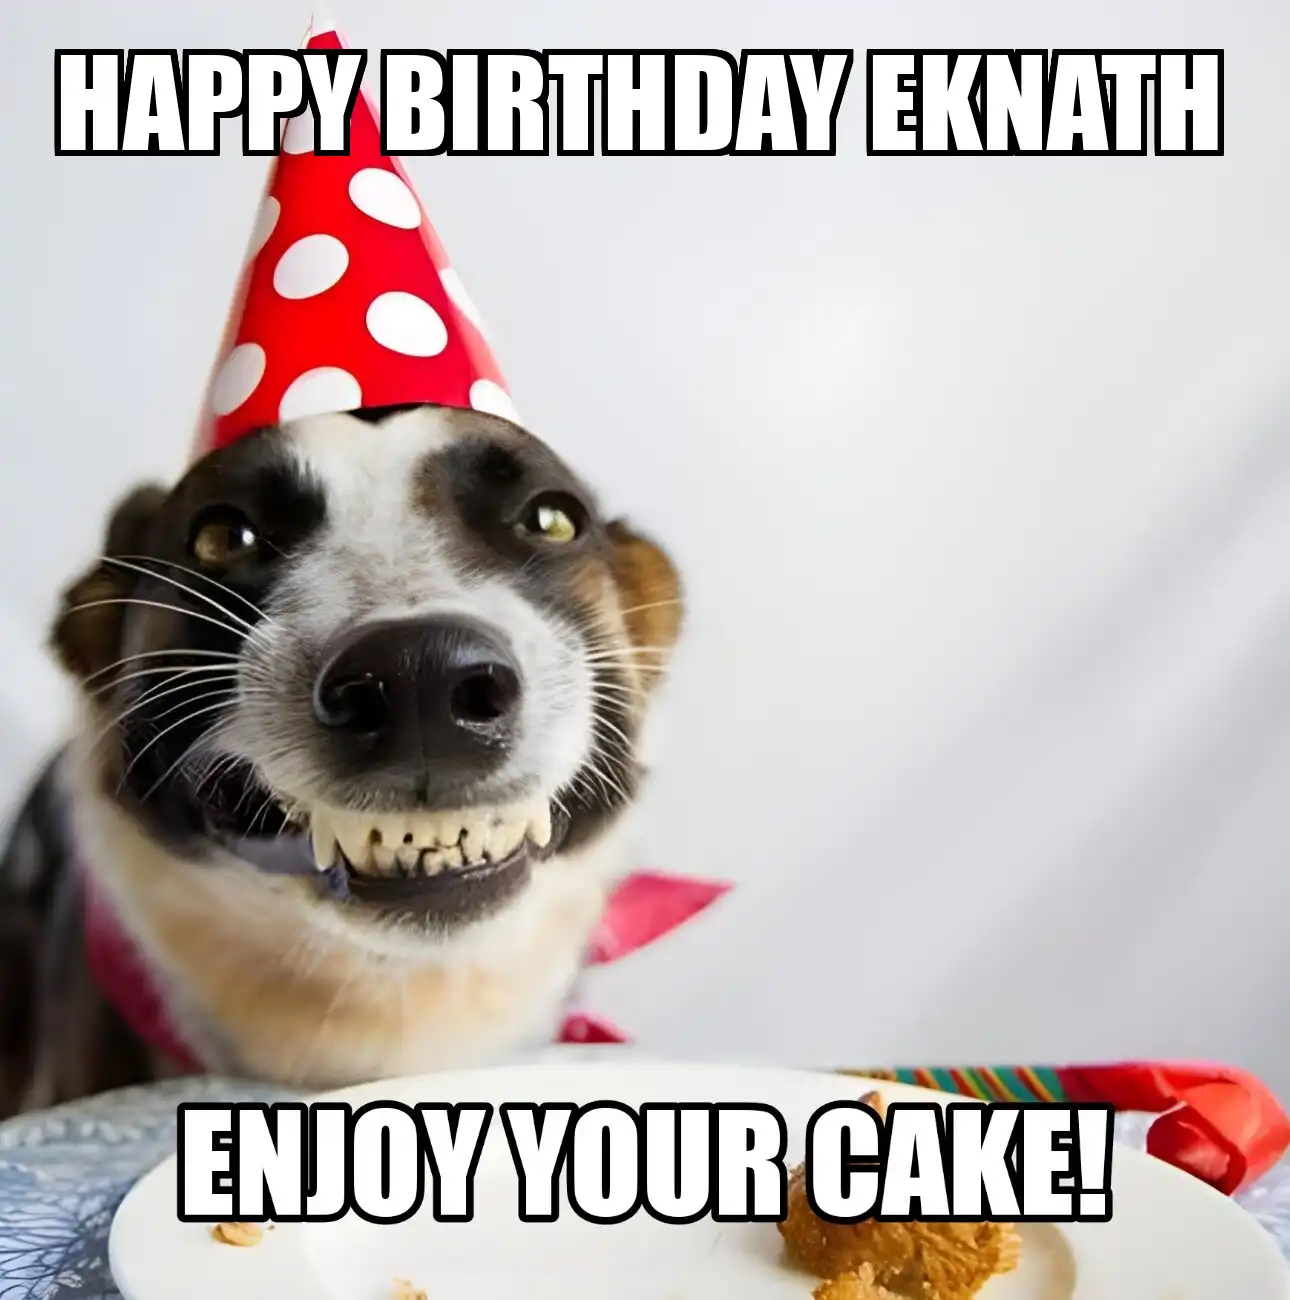 Happy Birthday Eknath Enjoy Your Cake Dog Meme